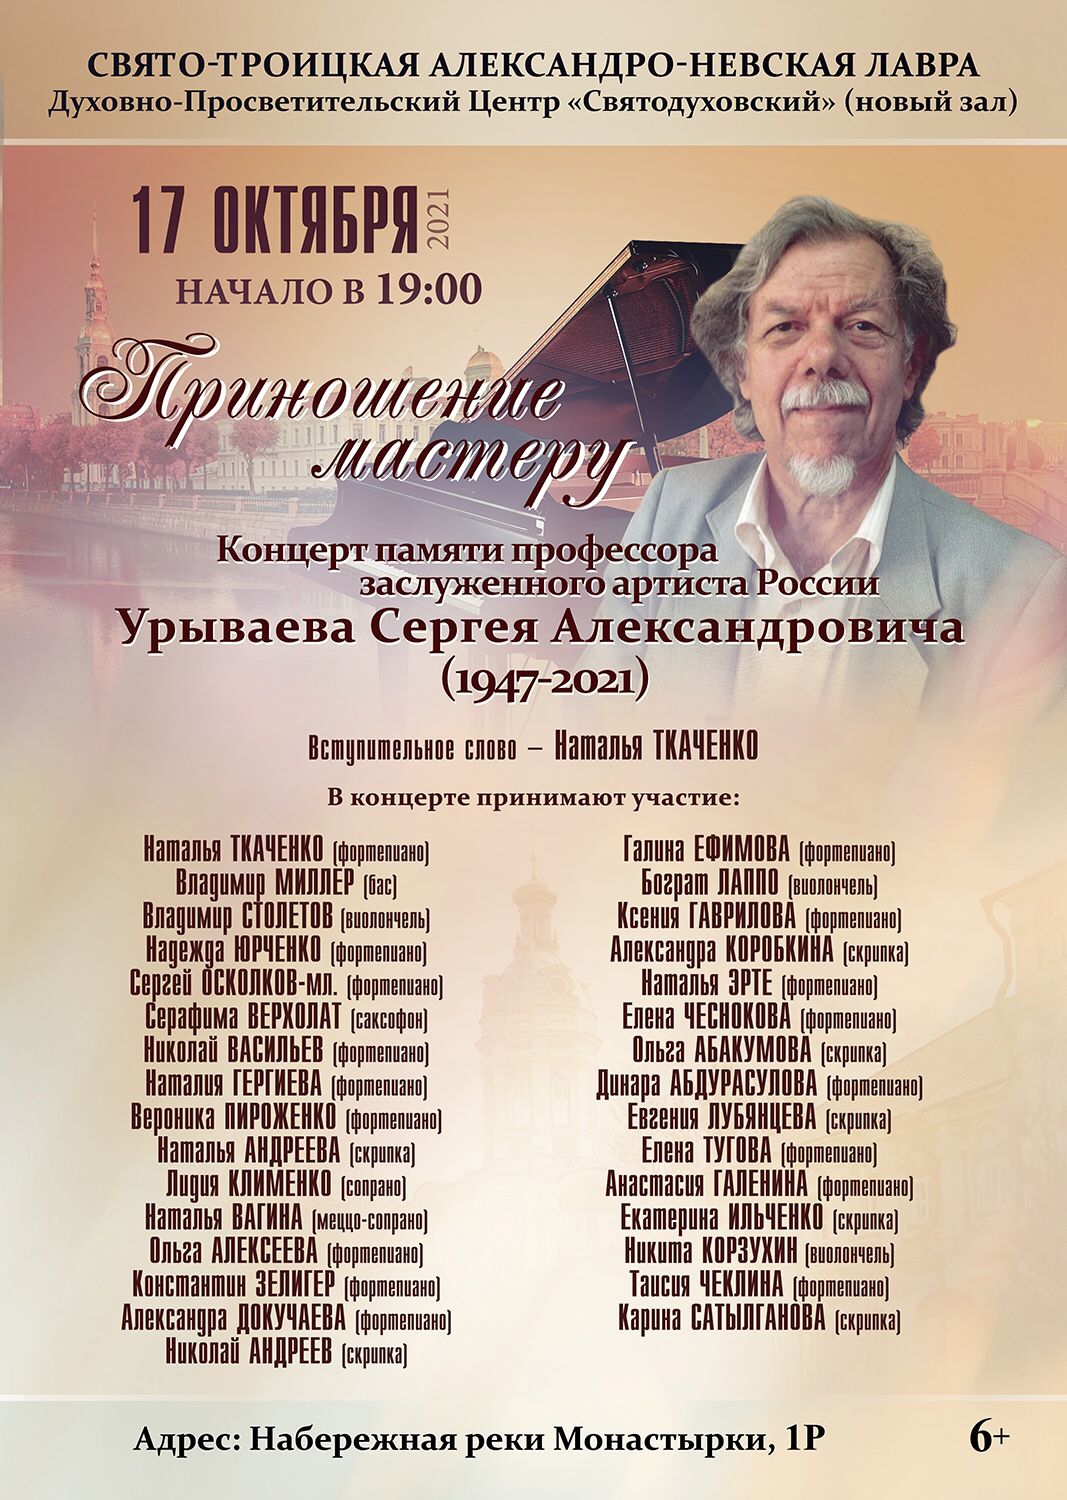 Афиша концерта памяти заслуженного артиста России Сергея Александровича Урываева